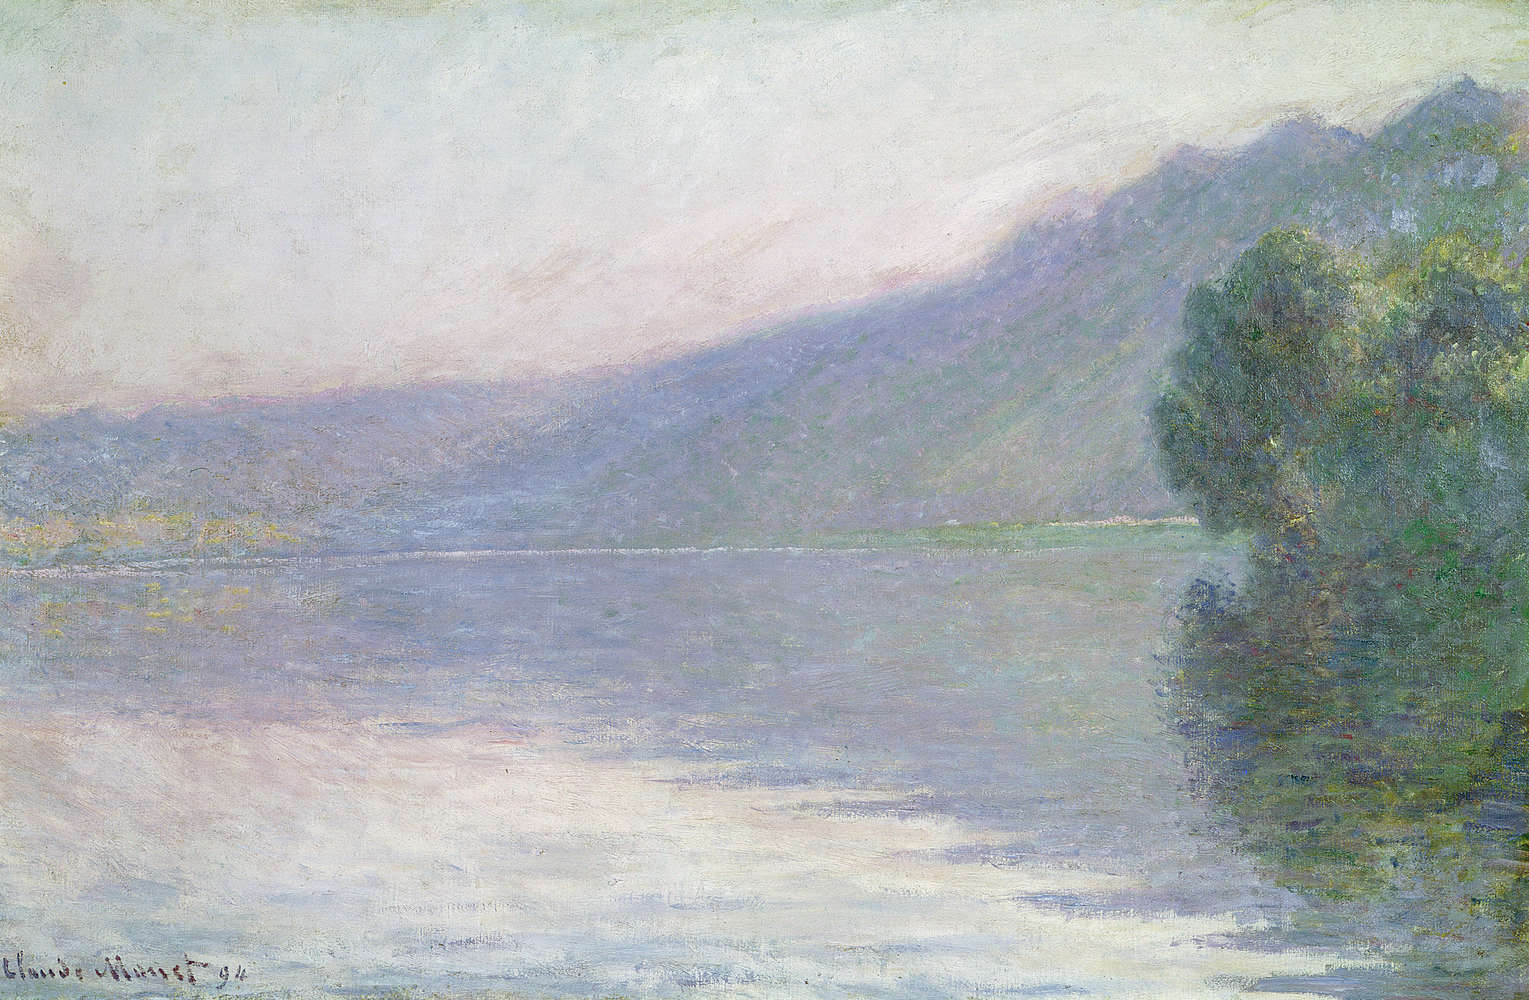             Fototapete "Die Seine bei PortVillez" von Claude Monet
        